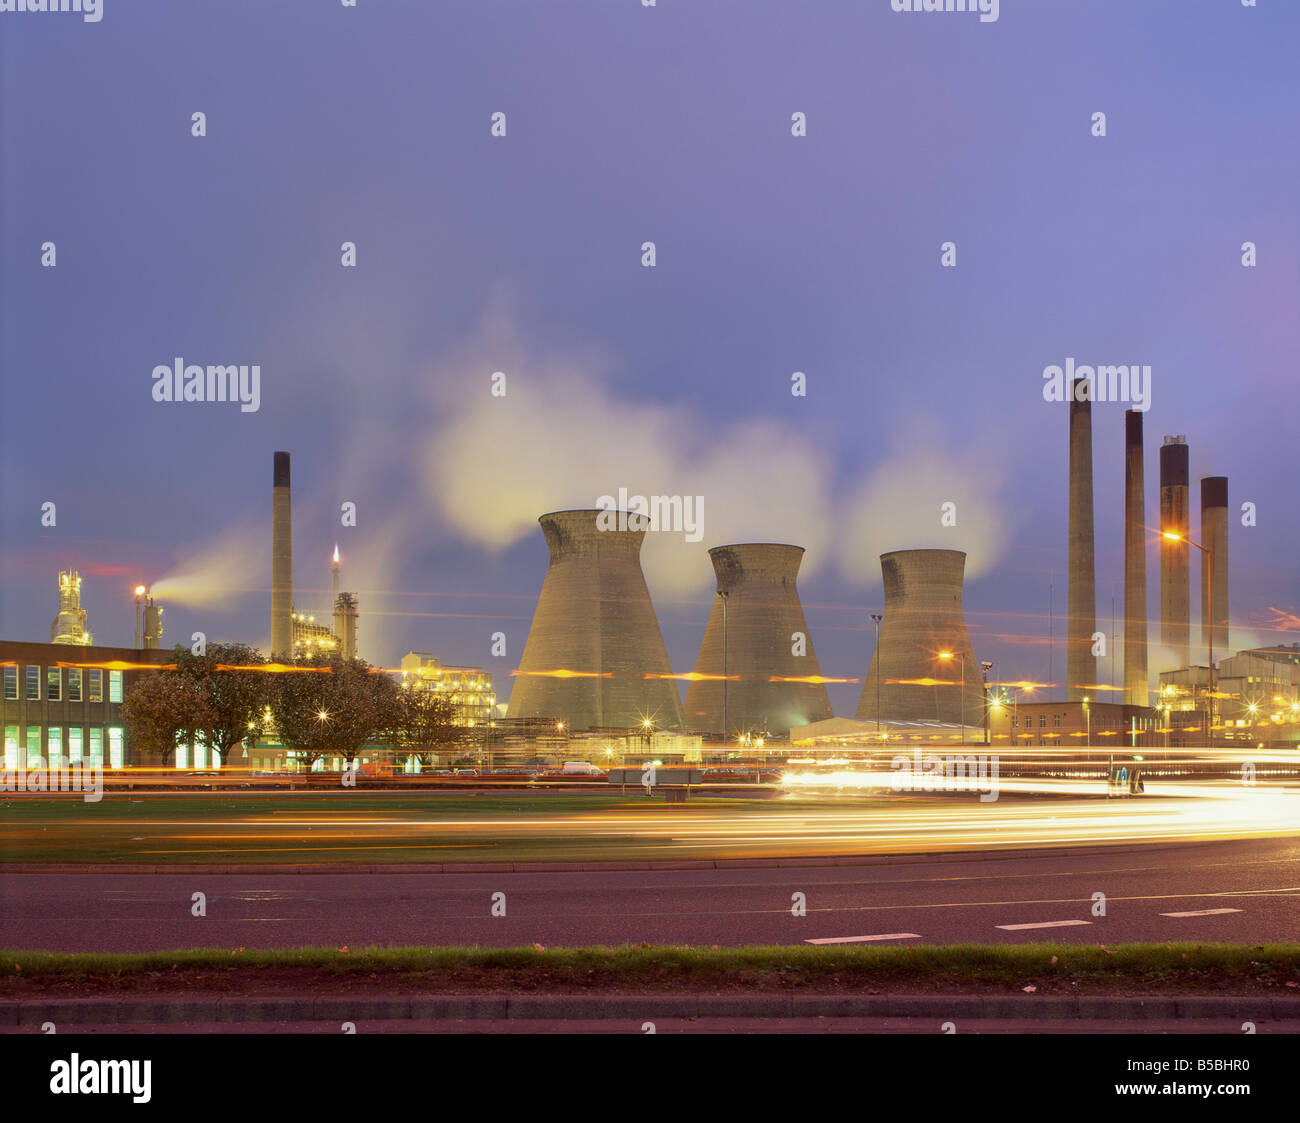 Grangemouth petro chemical plant illuminated at dusk Scotland United Kingdom Europe Stock Photo